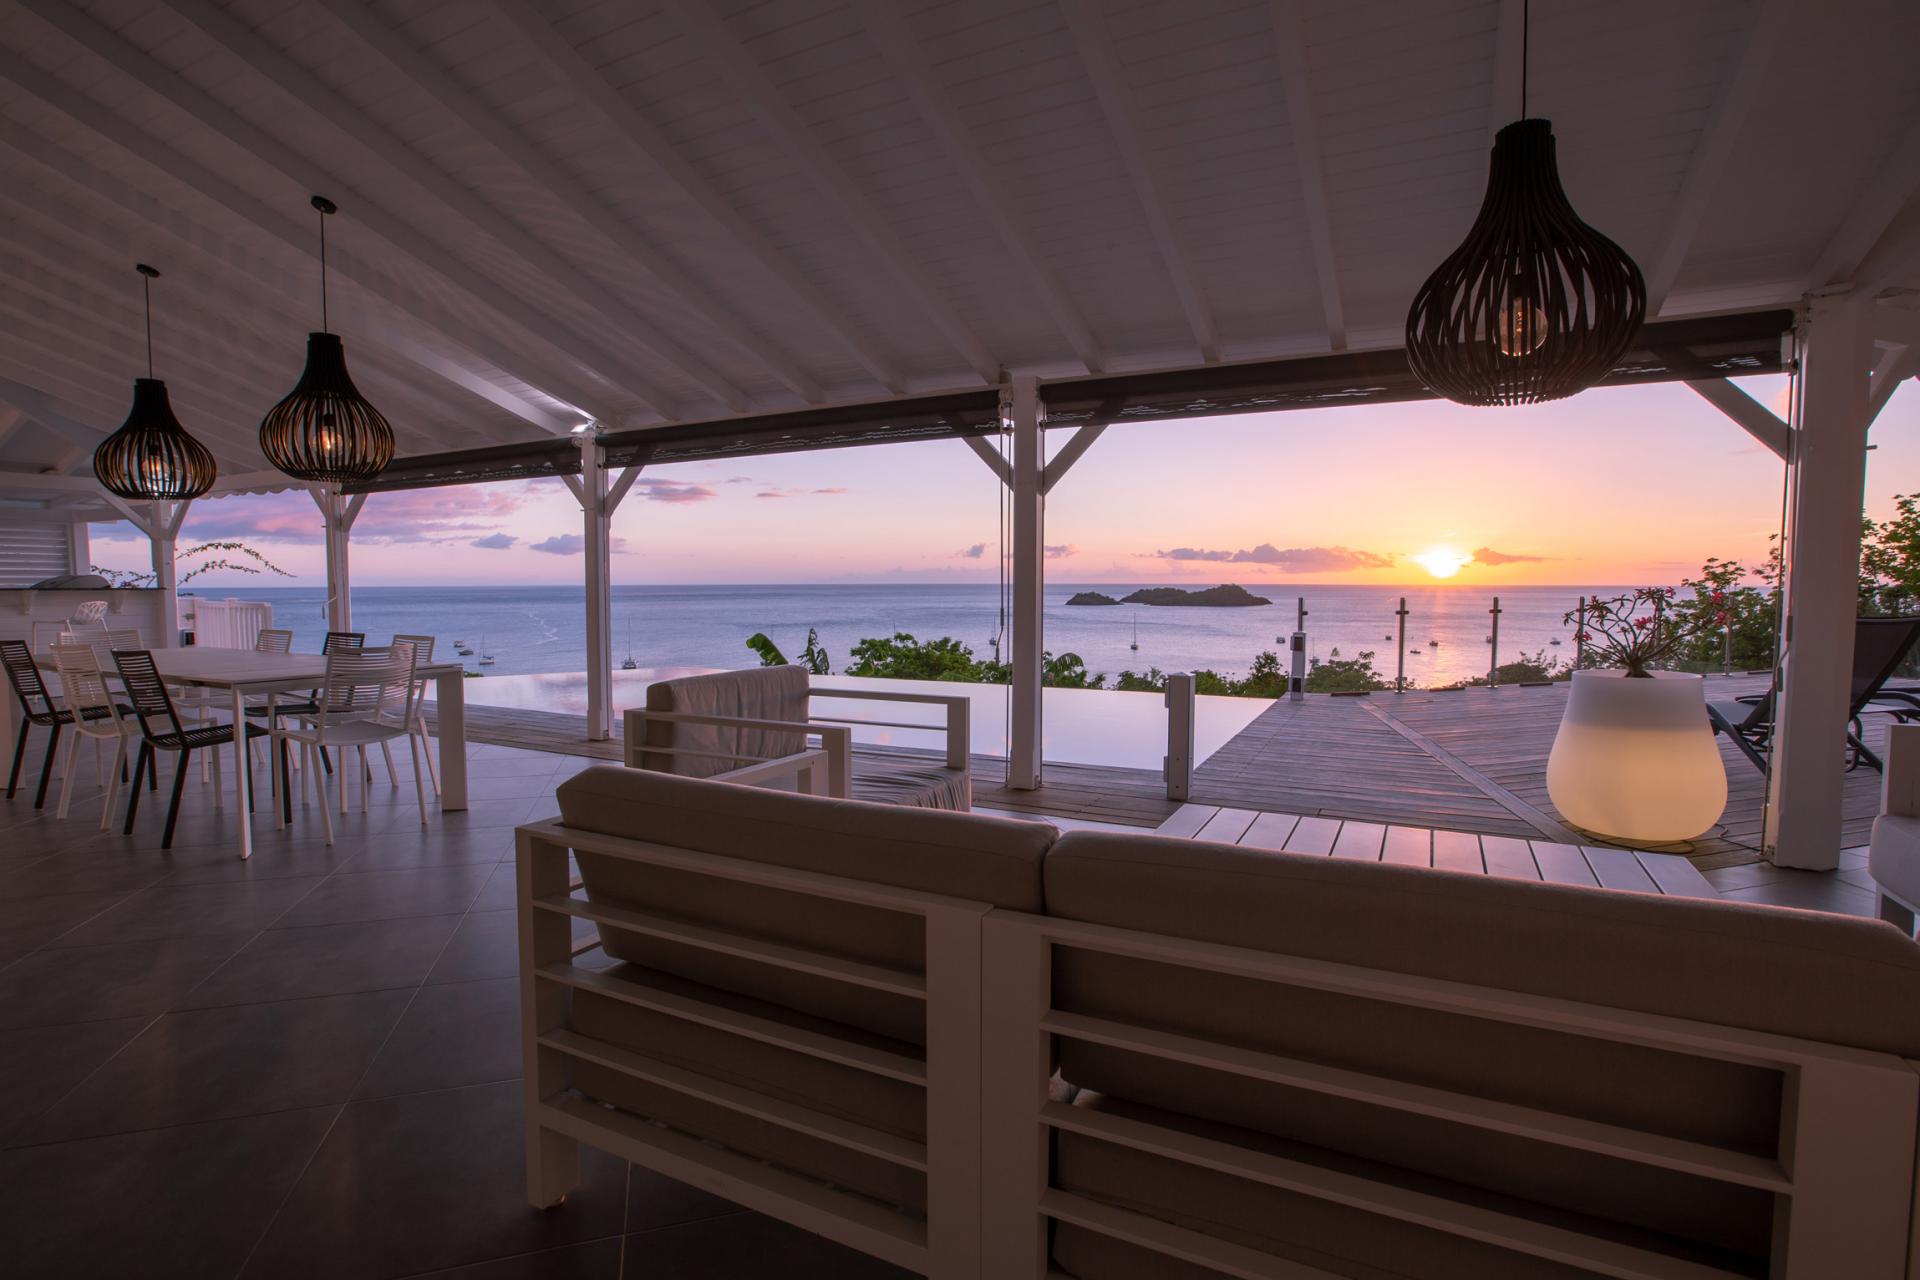 Location Guadeloupe - Villa 4 chambres 8 personnes à Bouillante vue mer et coucher de soleil